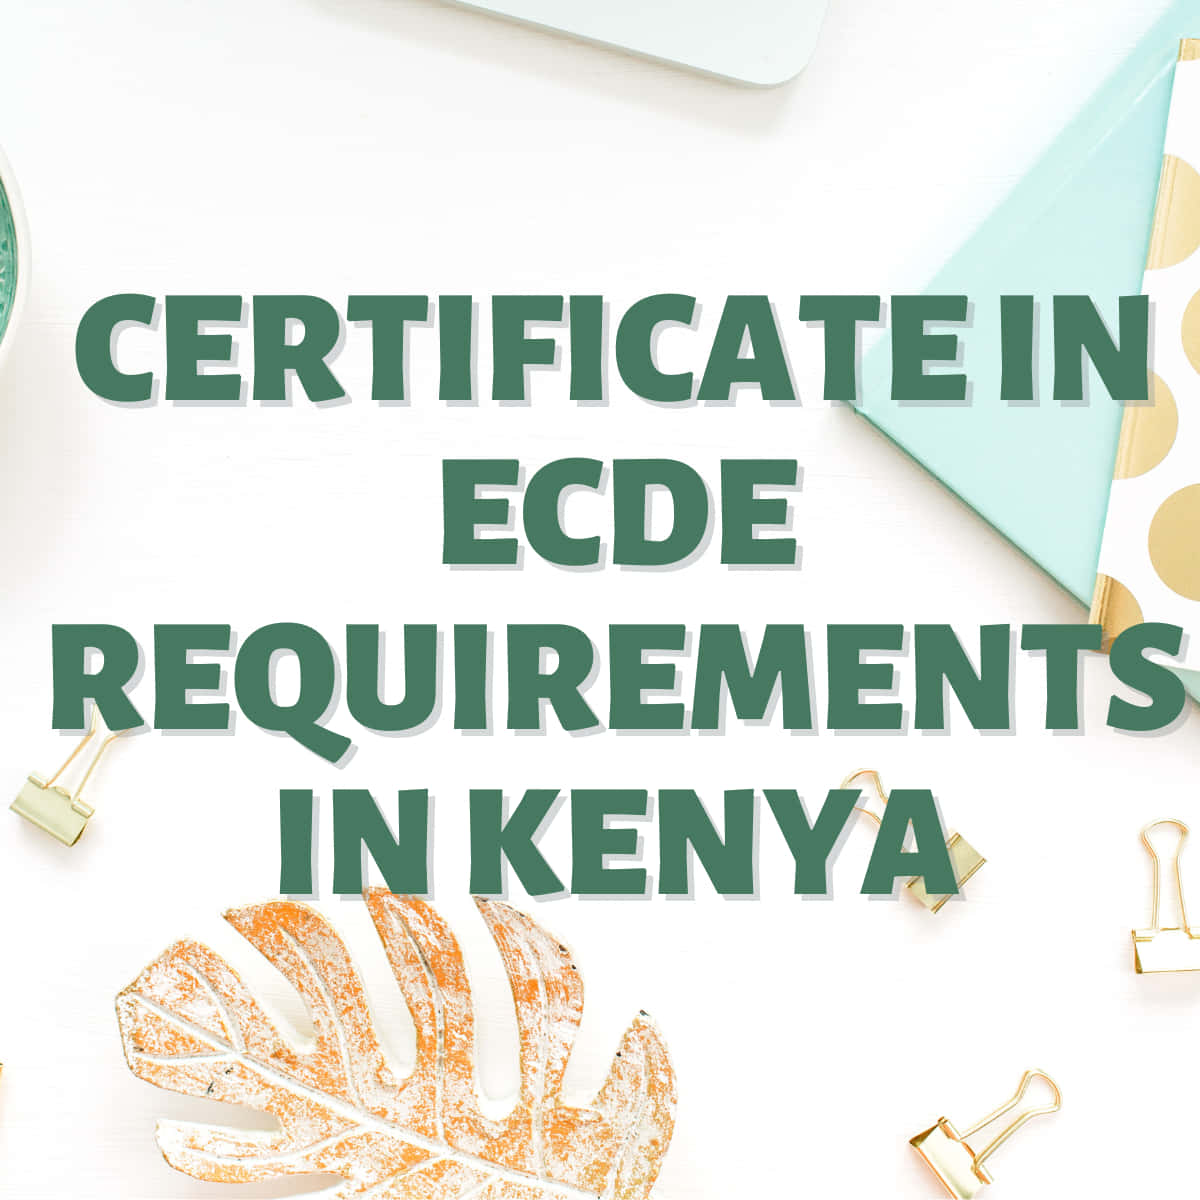 Certificate in ECDE requirements